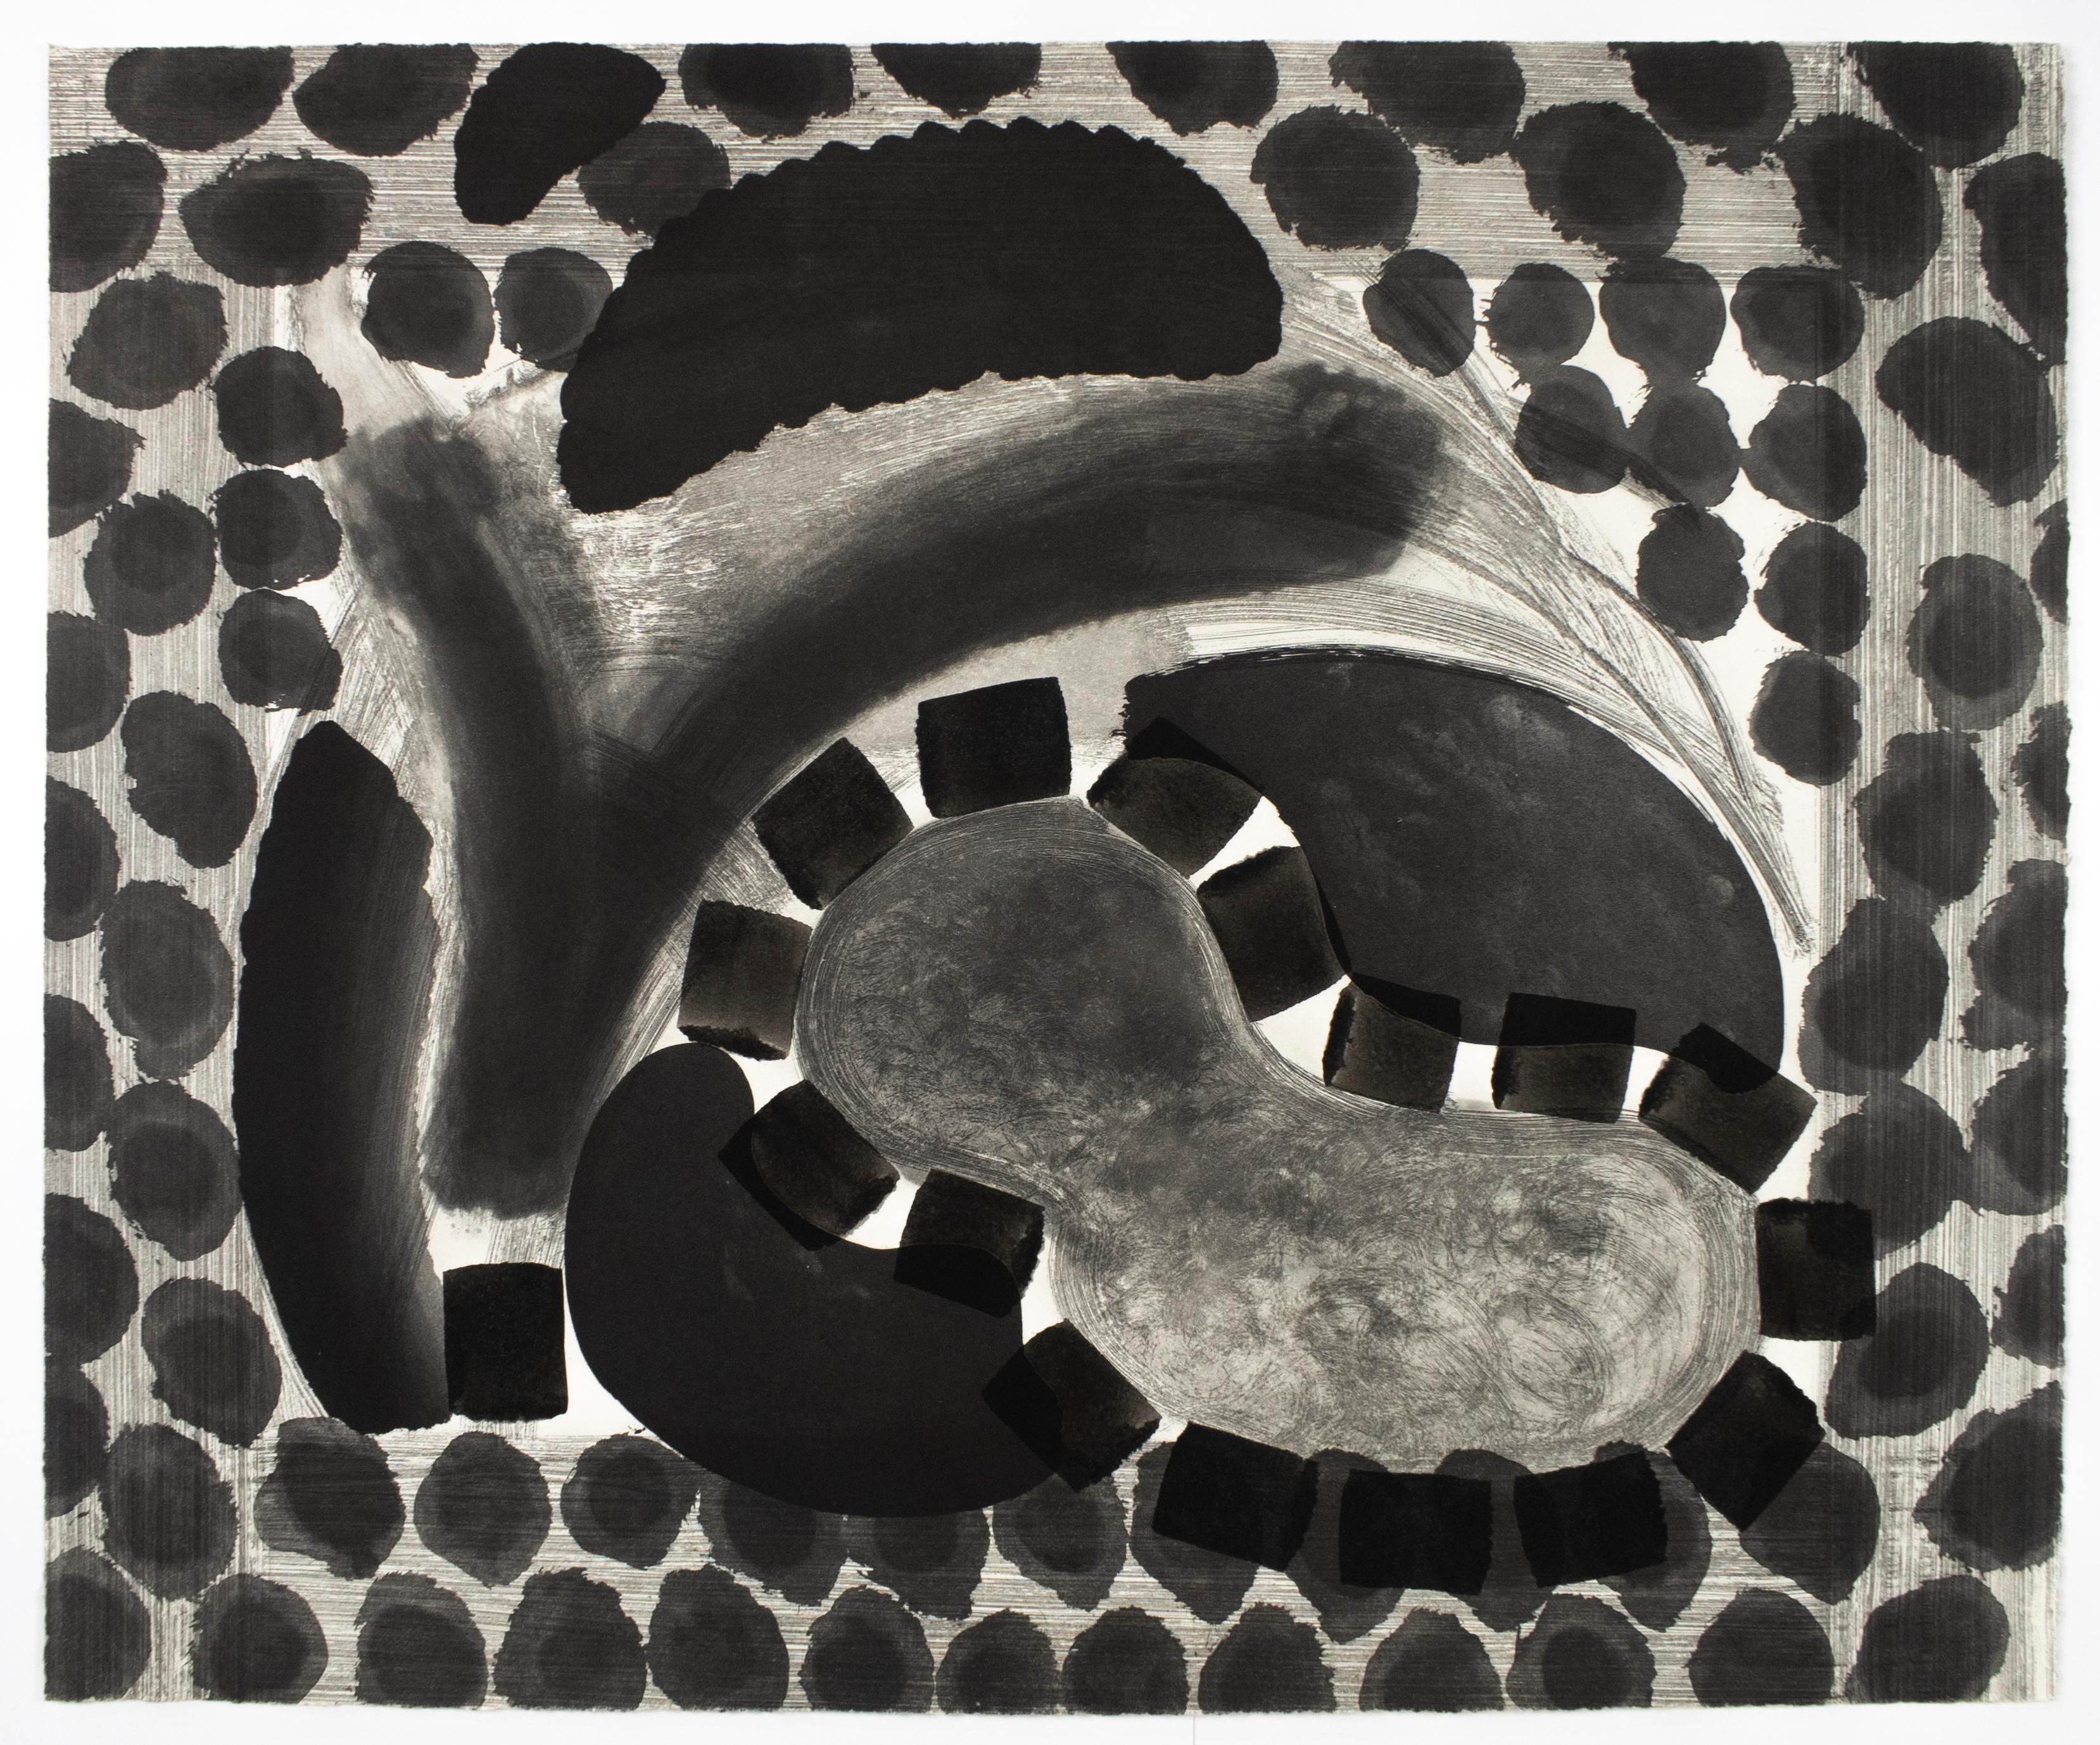 Großformatige Schwarz-Weiß-Radierung, die einen abstrahierten Pool im Haus von David Hockney in Los Angeles zeigt. Dieses handgemalte Werk von Howard Hodgkin ist ideal für minimalistische, moderne und zeitgenössische Räume. Zum Freundeskreis von